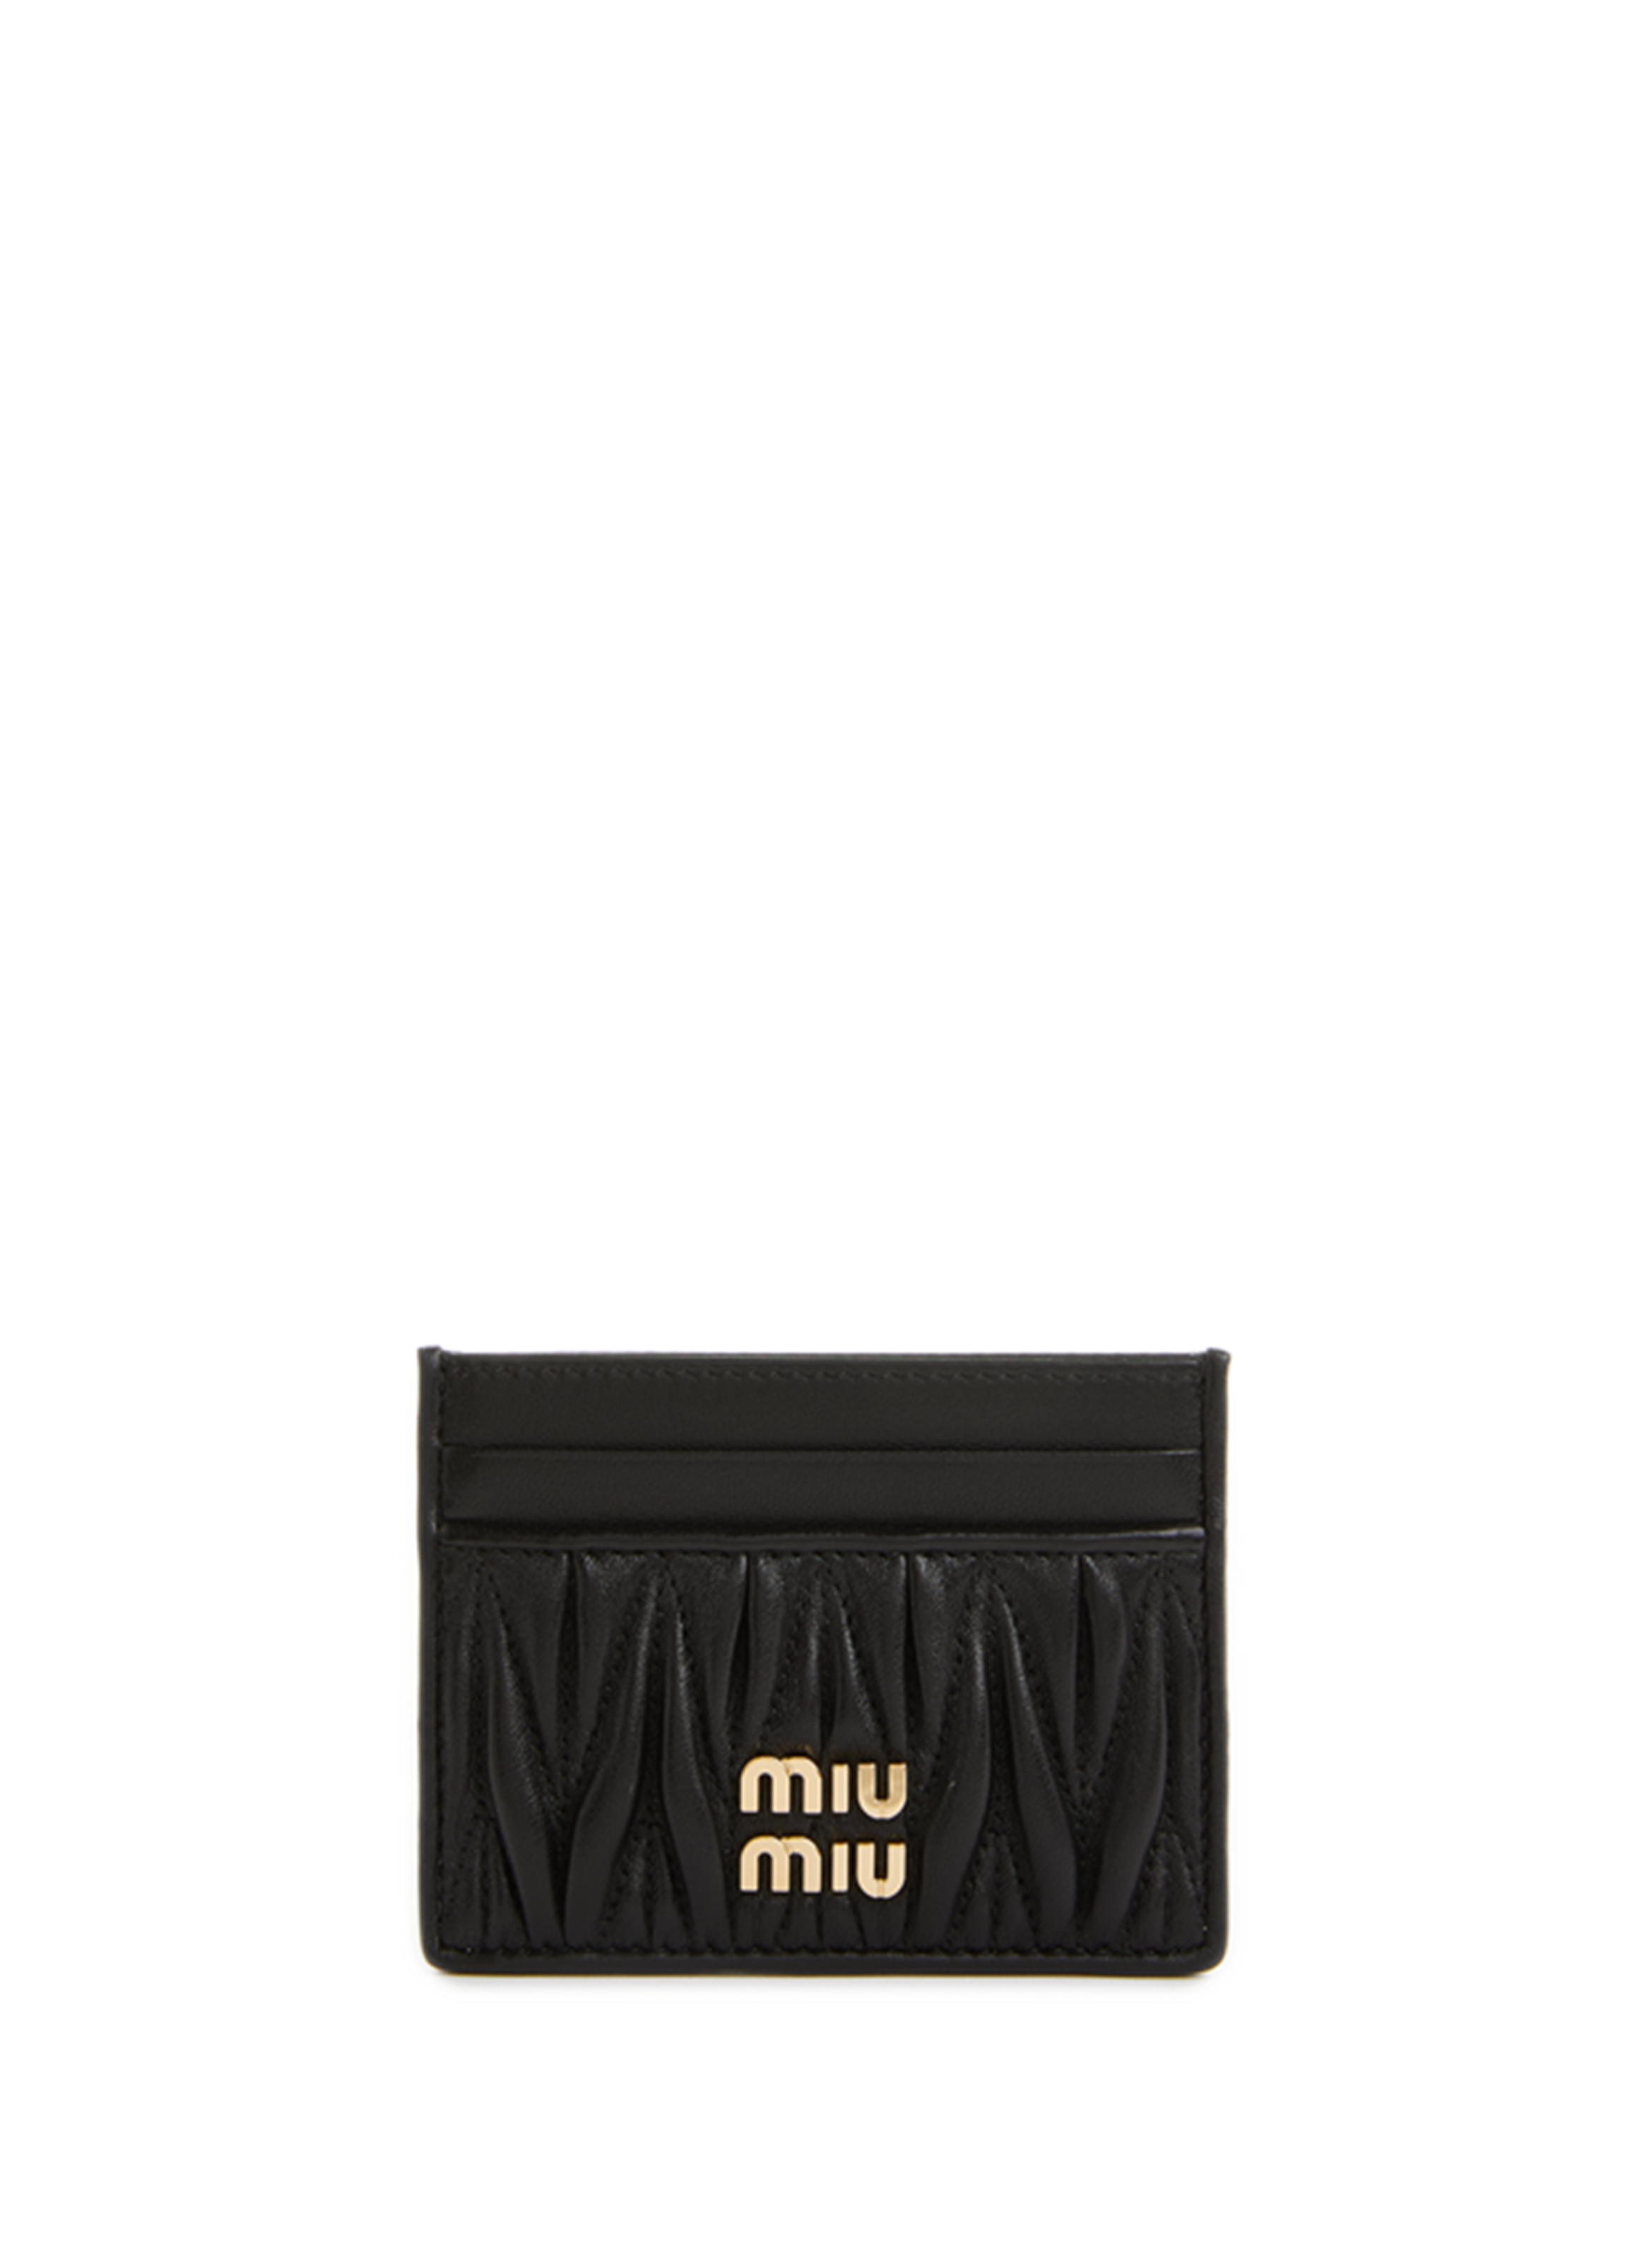 Miu Miu Matelasse Mini Shoulder Bag/What fits inside/Petite Over 40 -  YouTube